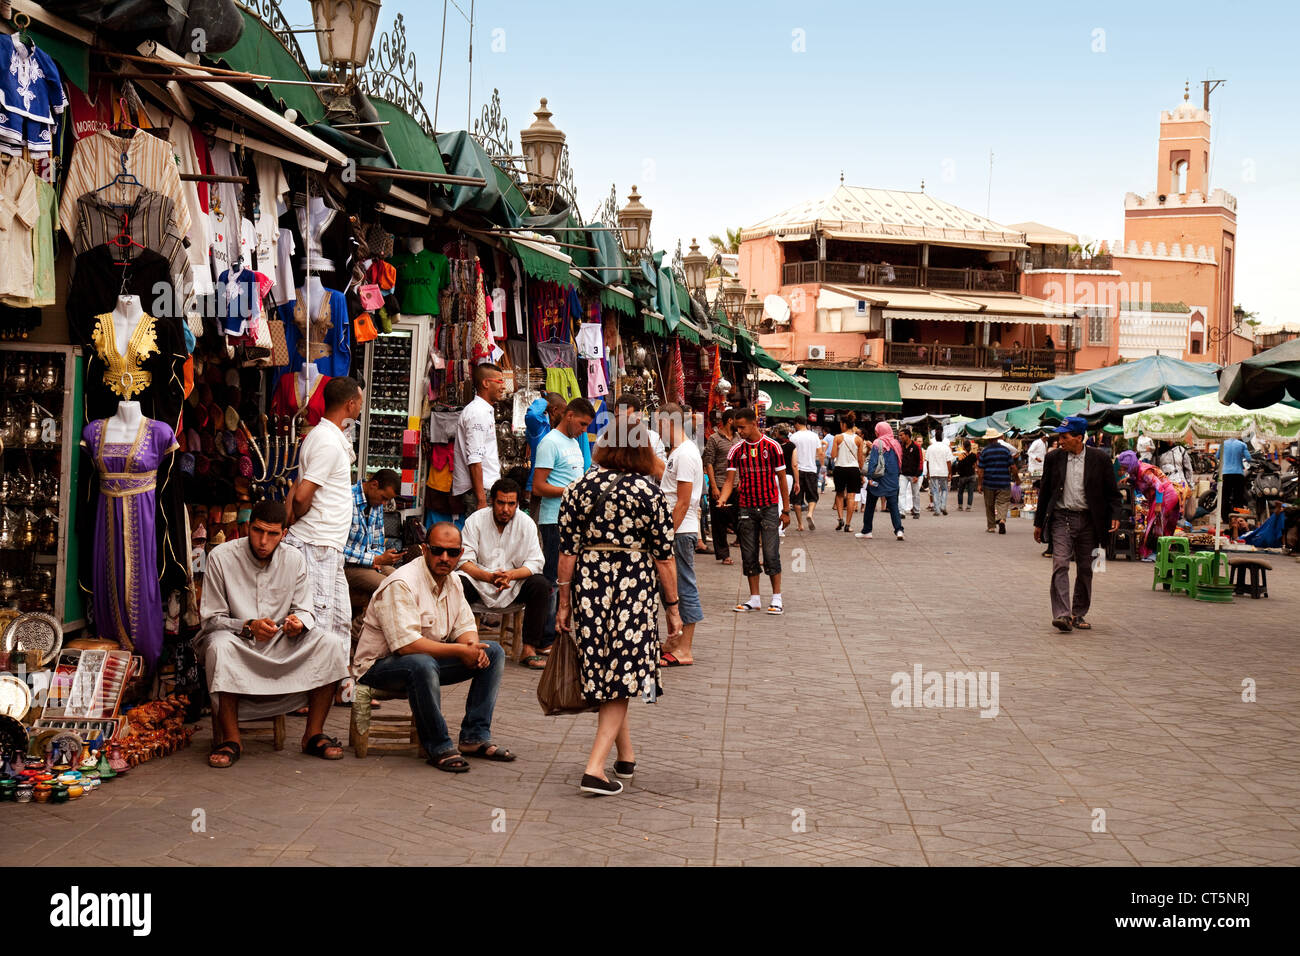 Leute einkaufen bei usy Stände in der Medina, der Altstadt, Markt, Djemaa el Fna, Marrakech, Marokko, Afrika Stockfoto